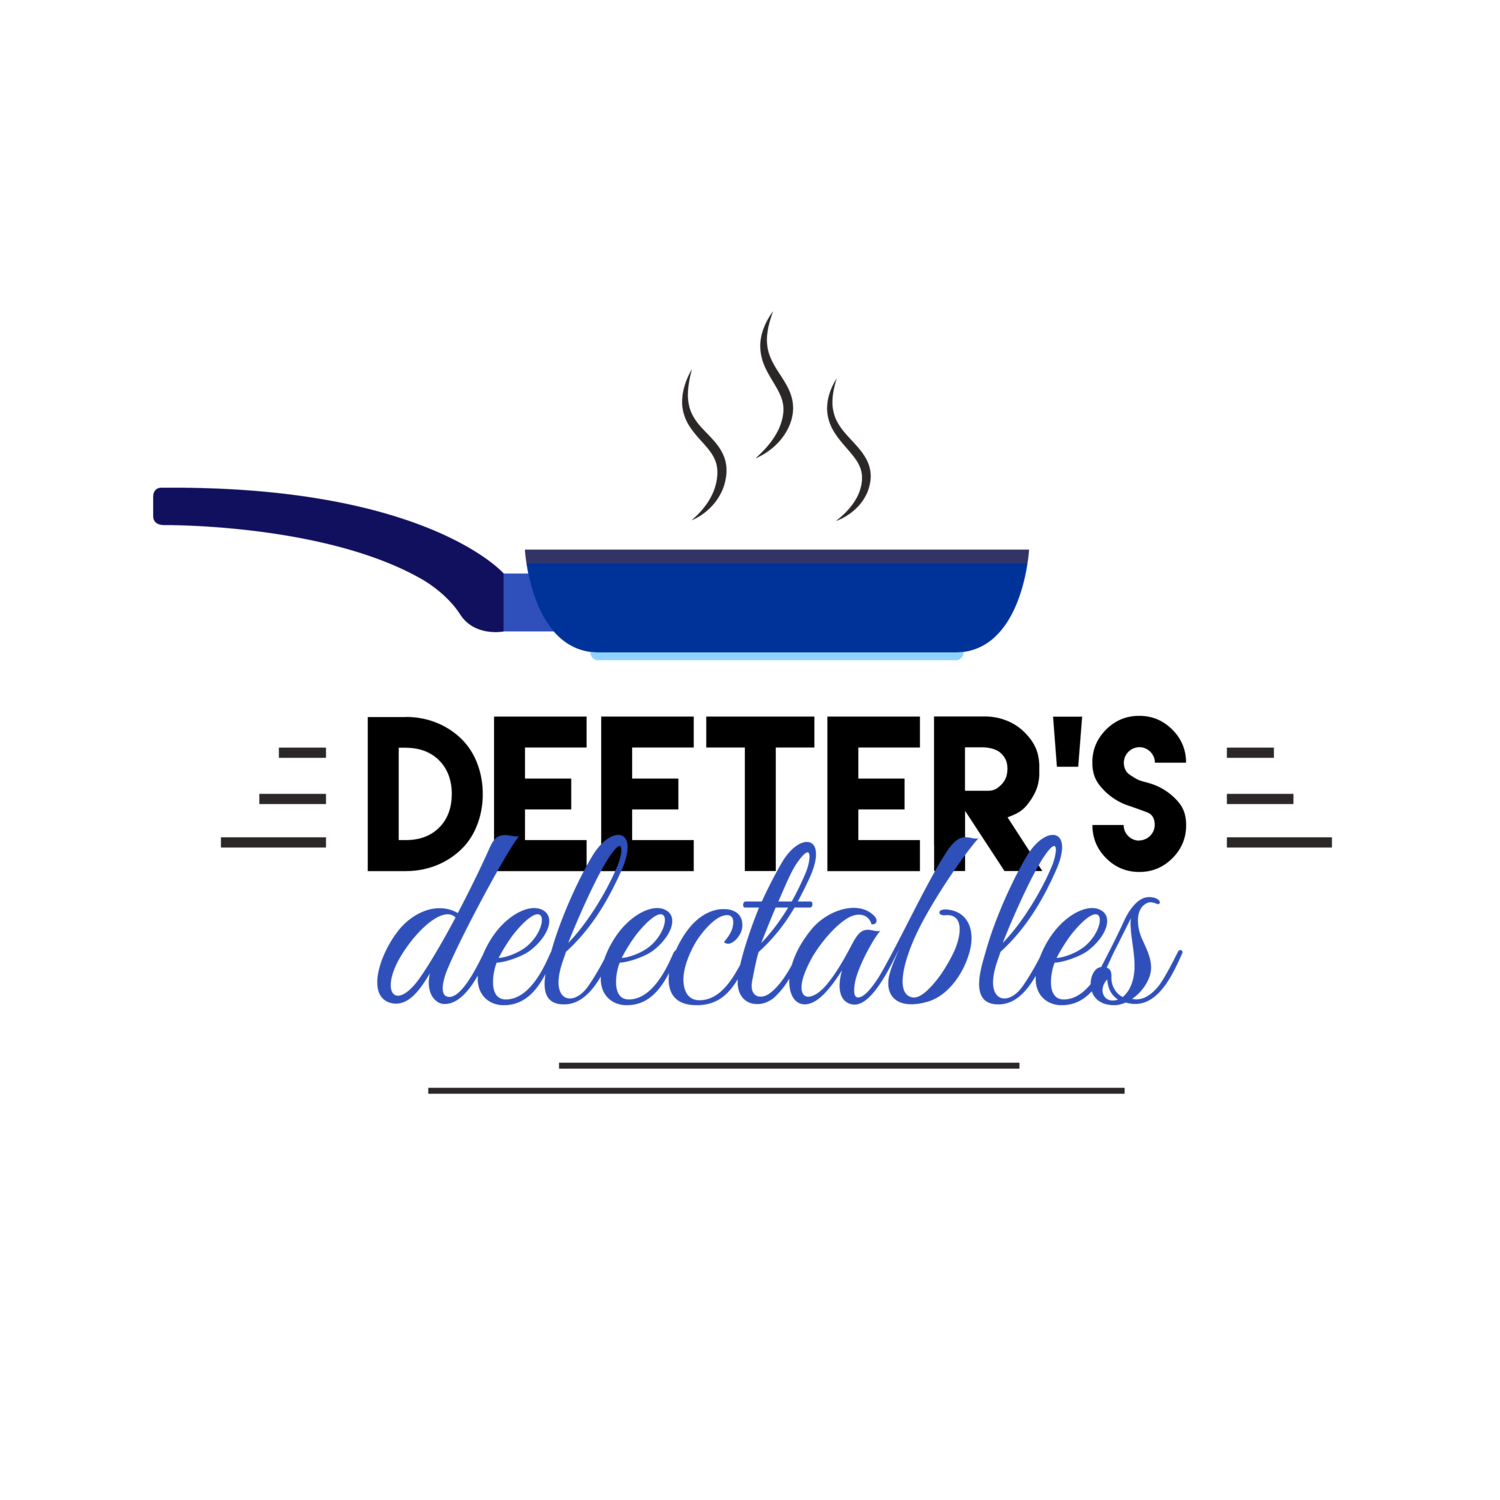 Deeter's Delectables